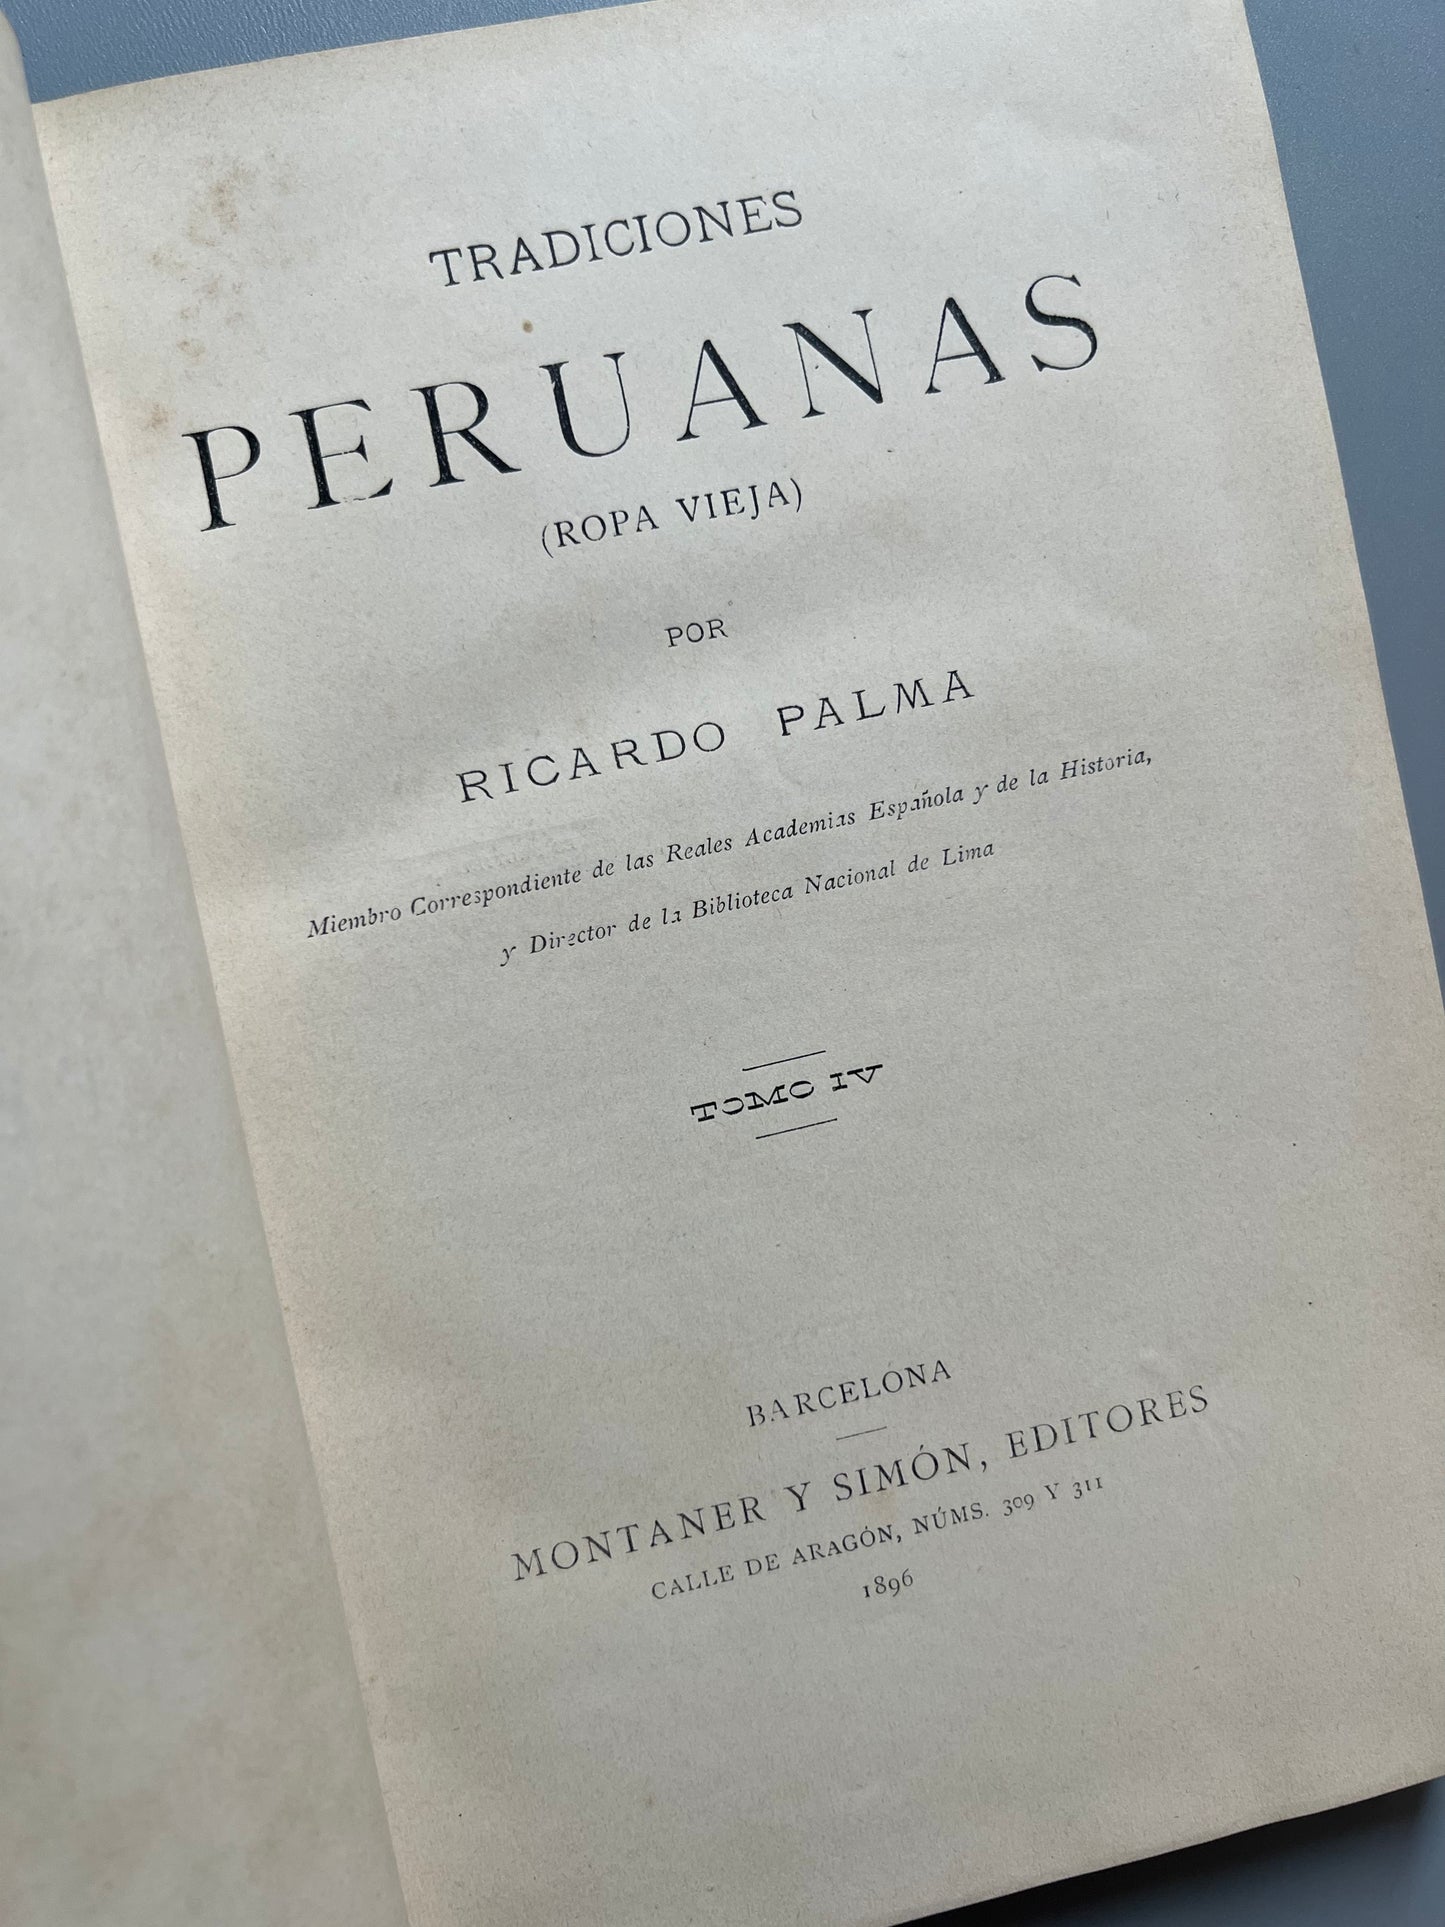 Tradiciones peruanas, Ricardo Palma - Montaner y Simón, 1893/1896